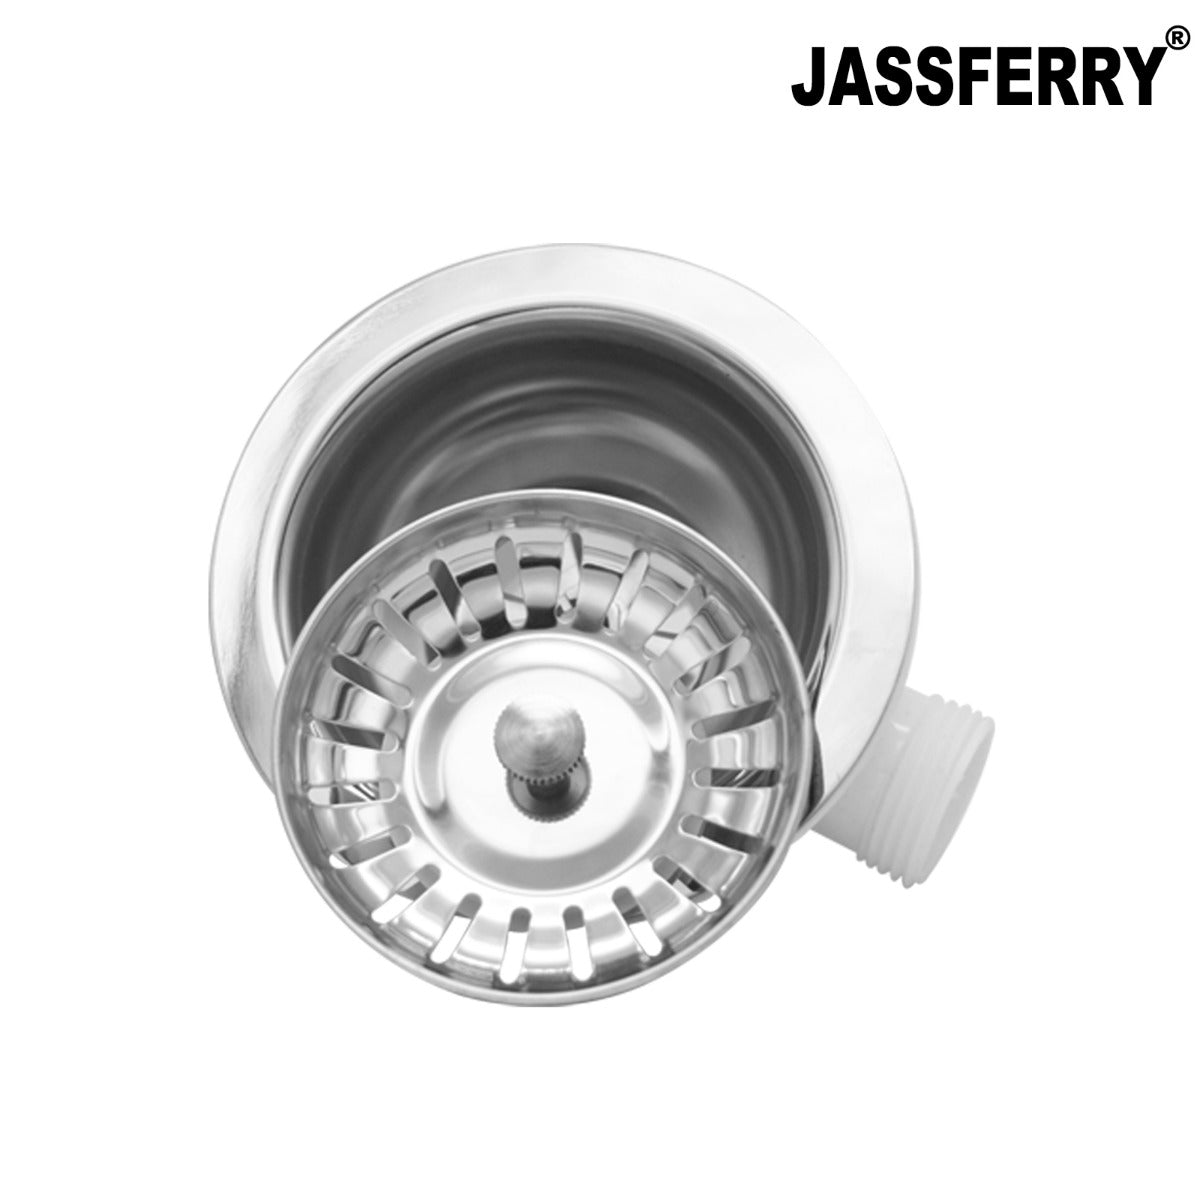 JassferryJASSFERRY Single 1 Bowl Kitchen Sink Waste Strainer White Pipes KitPipes Kit